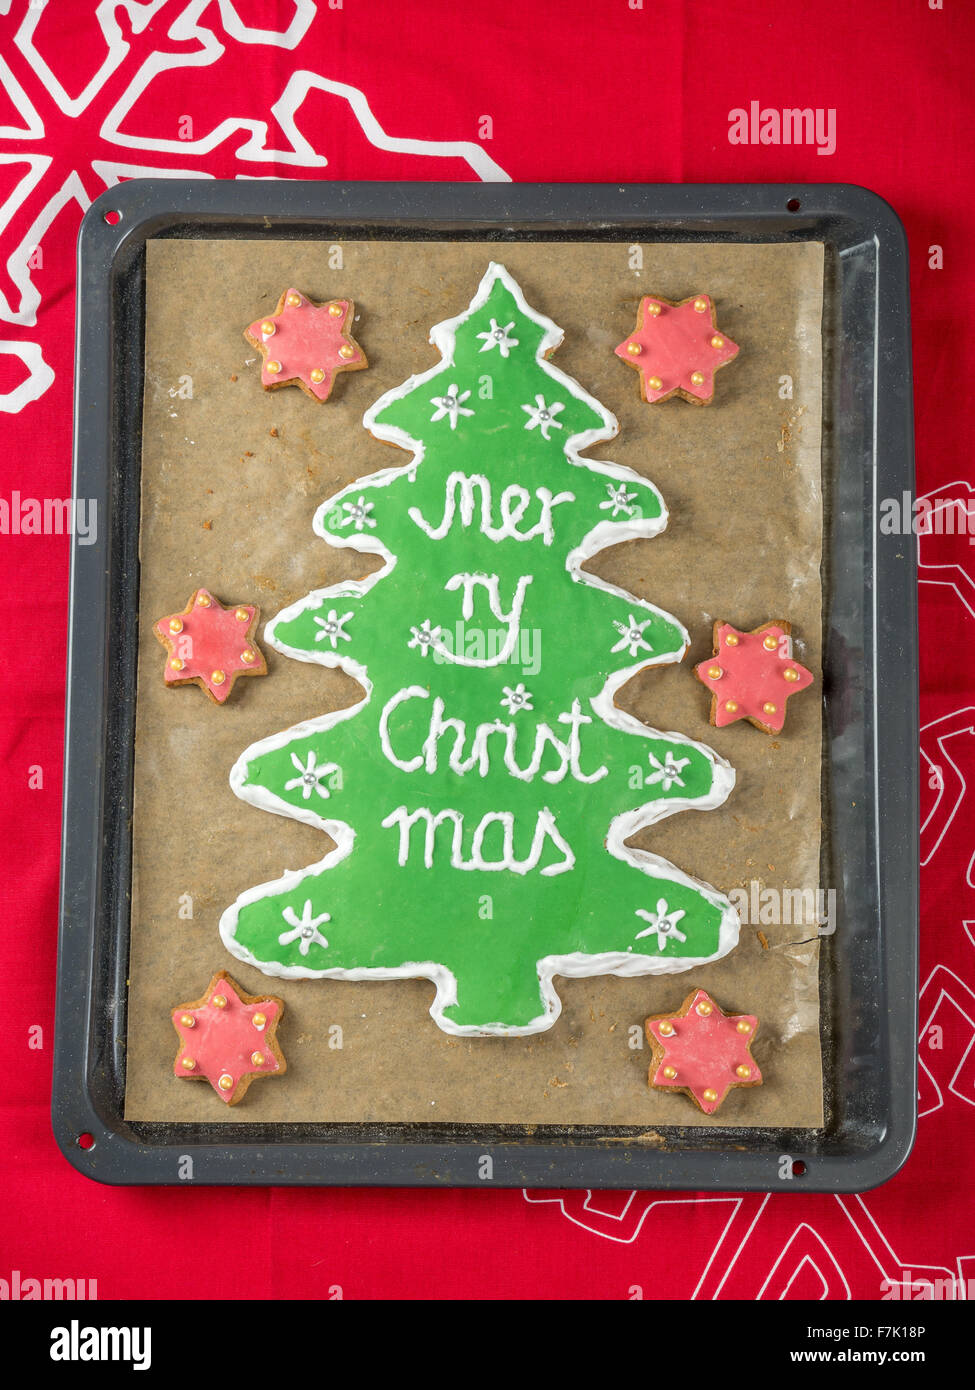 Hausgemachte Weihnachtsbaum-wie Lebkuchen mit grüner Glasur und Frohe Weihnachten schreiben auf Backblech gelegt am roten Tisch Stockfoto